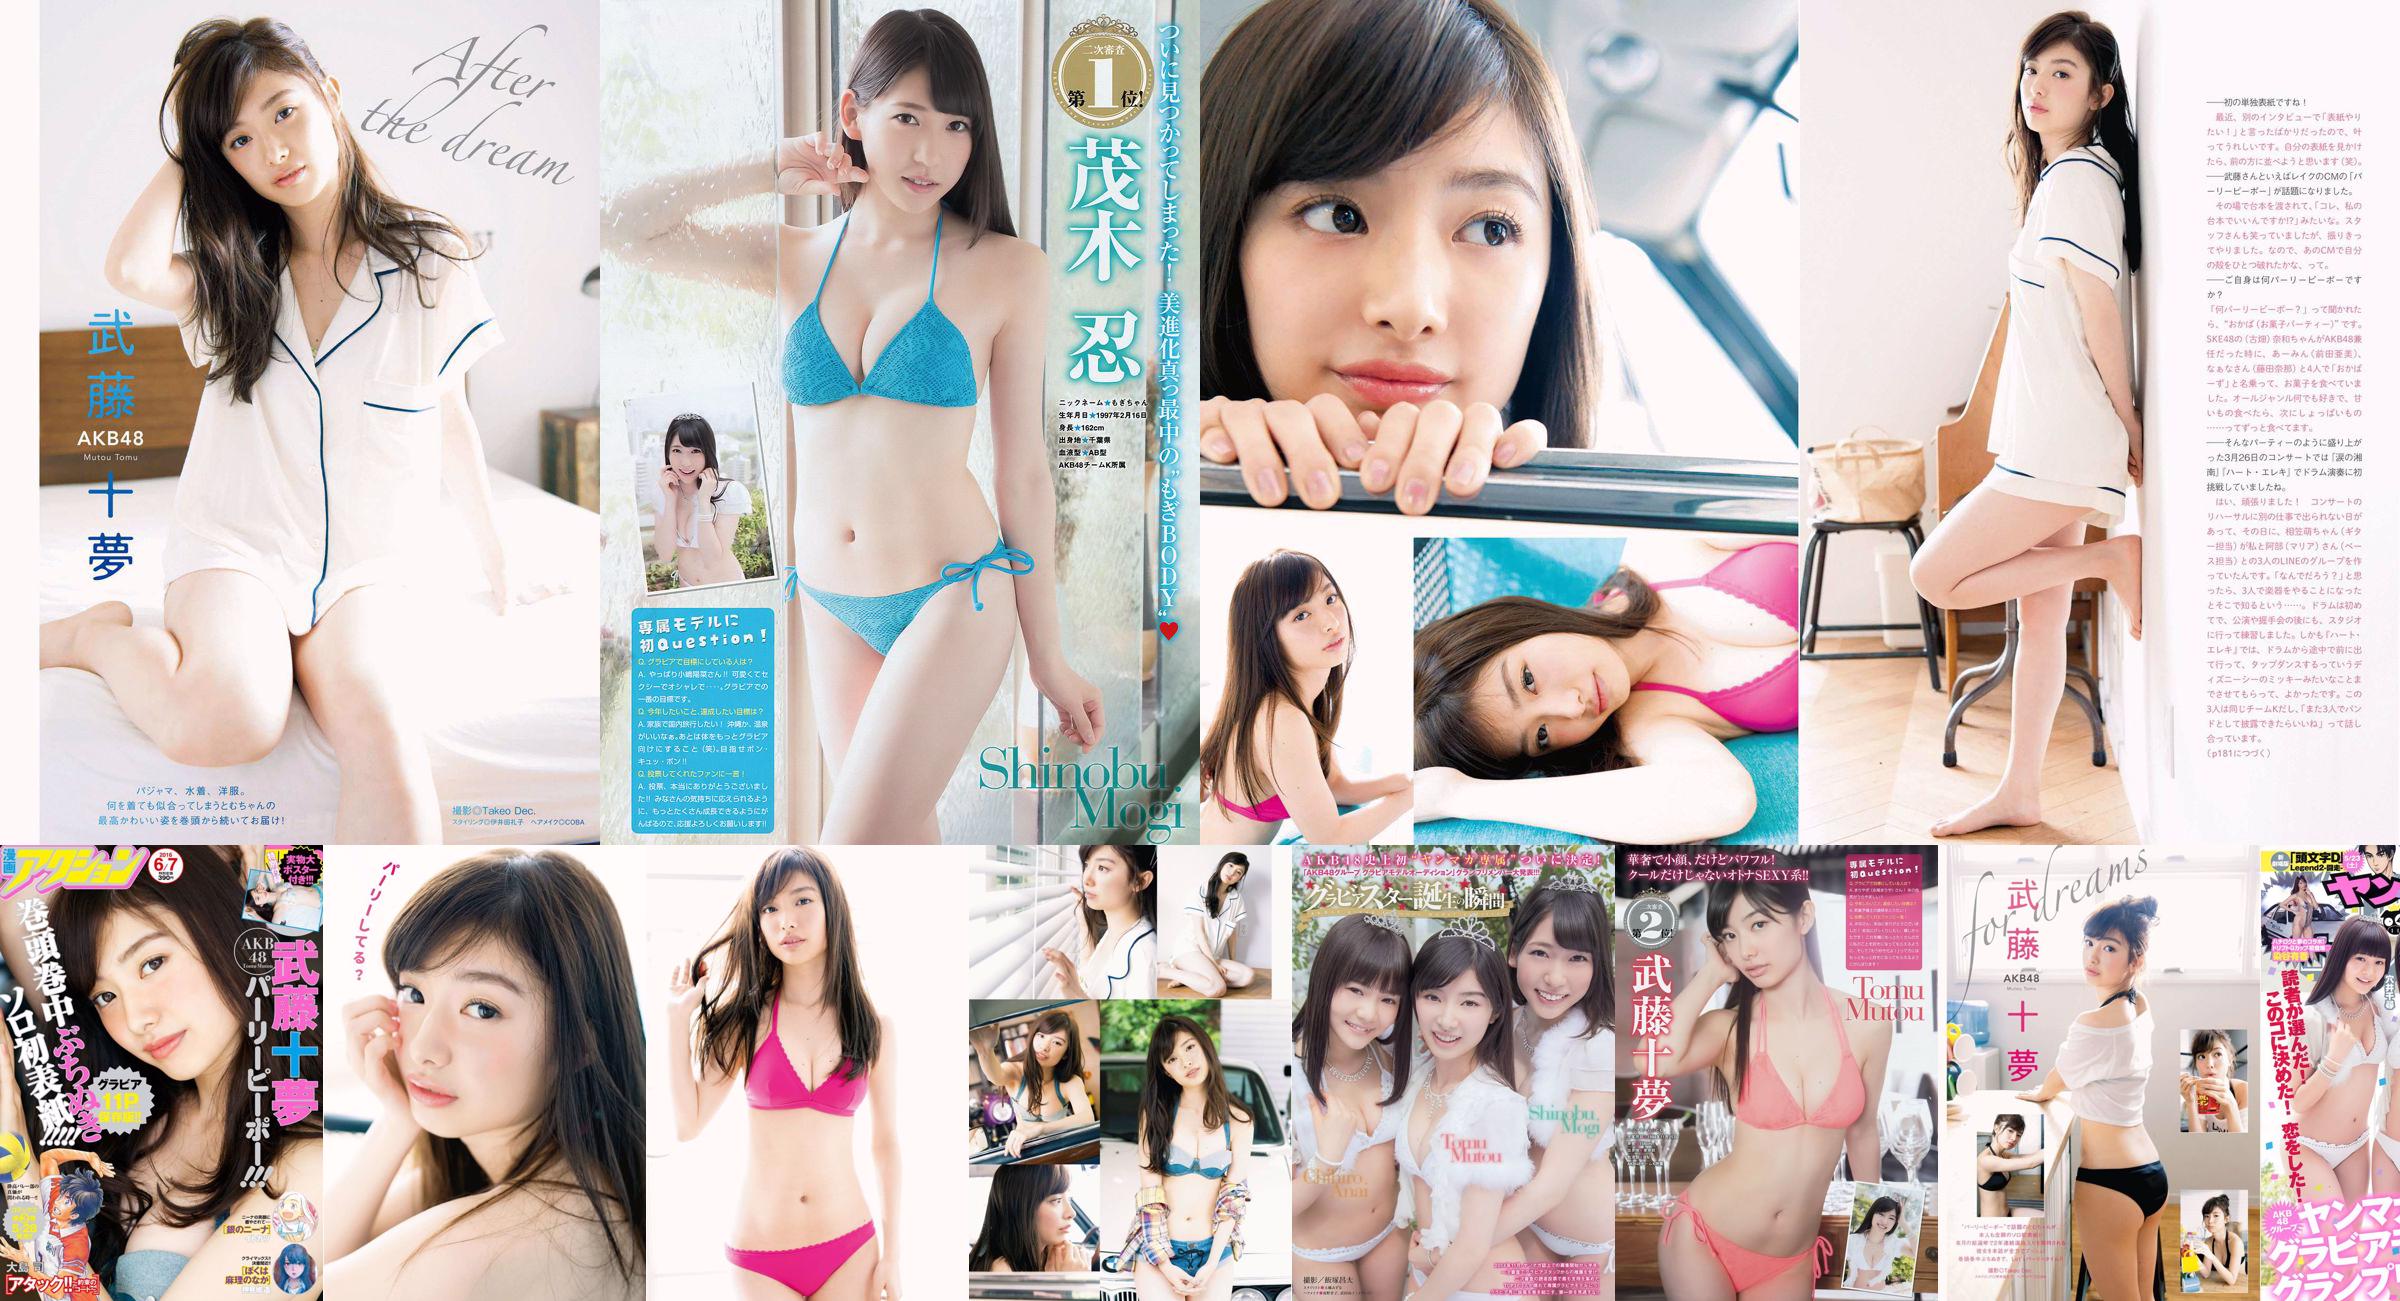 [Young Magazine] Tomu Muto Shinobu Mogi Chihiro Anai Erina Mano Yuka Someya 2015 No.25 Photograph No.999203 Page 3